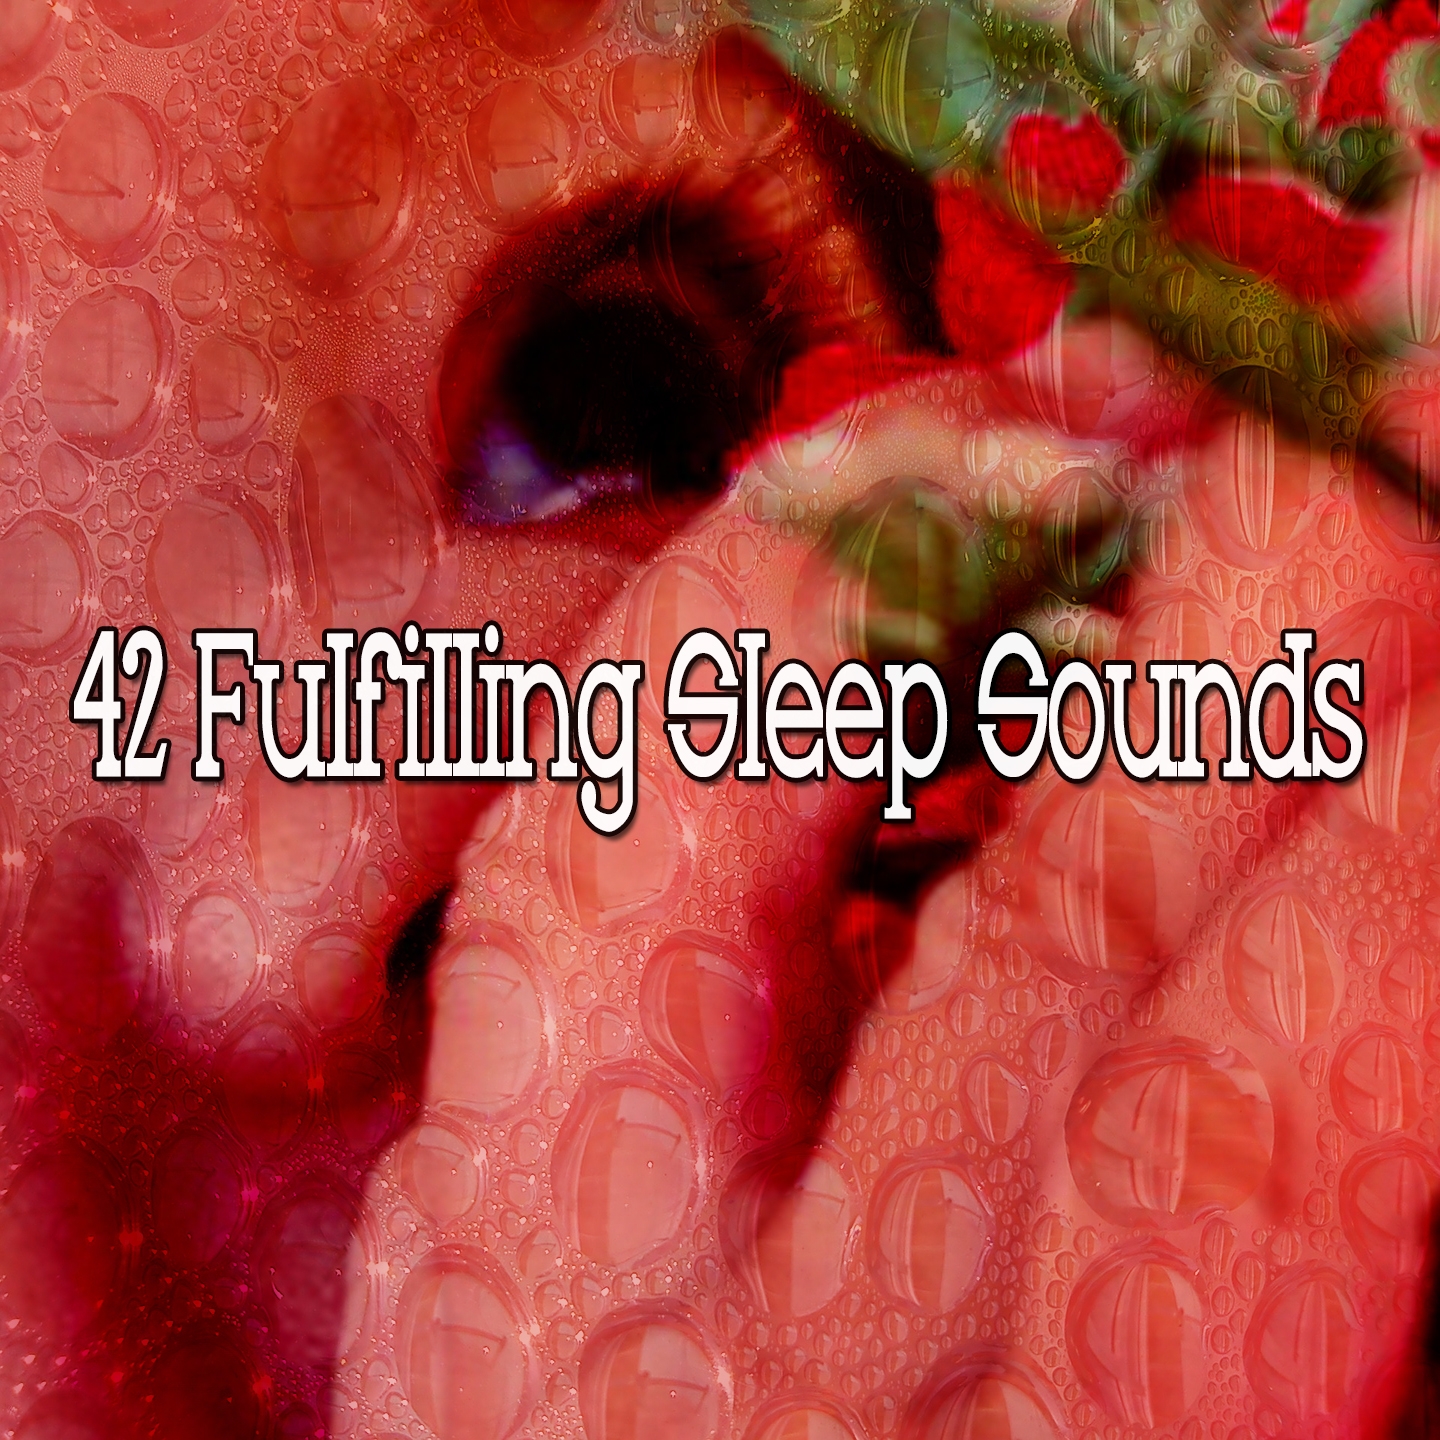 42 Fulfilling Sleep Sounds